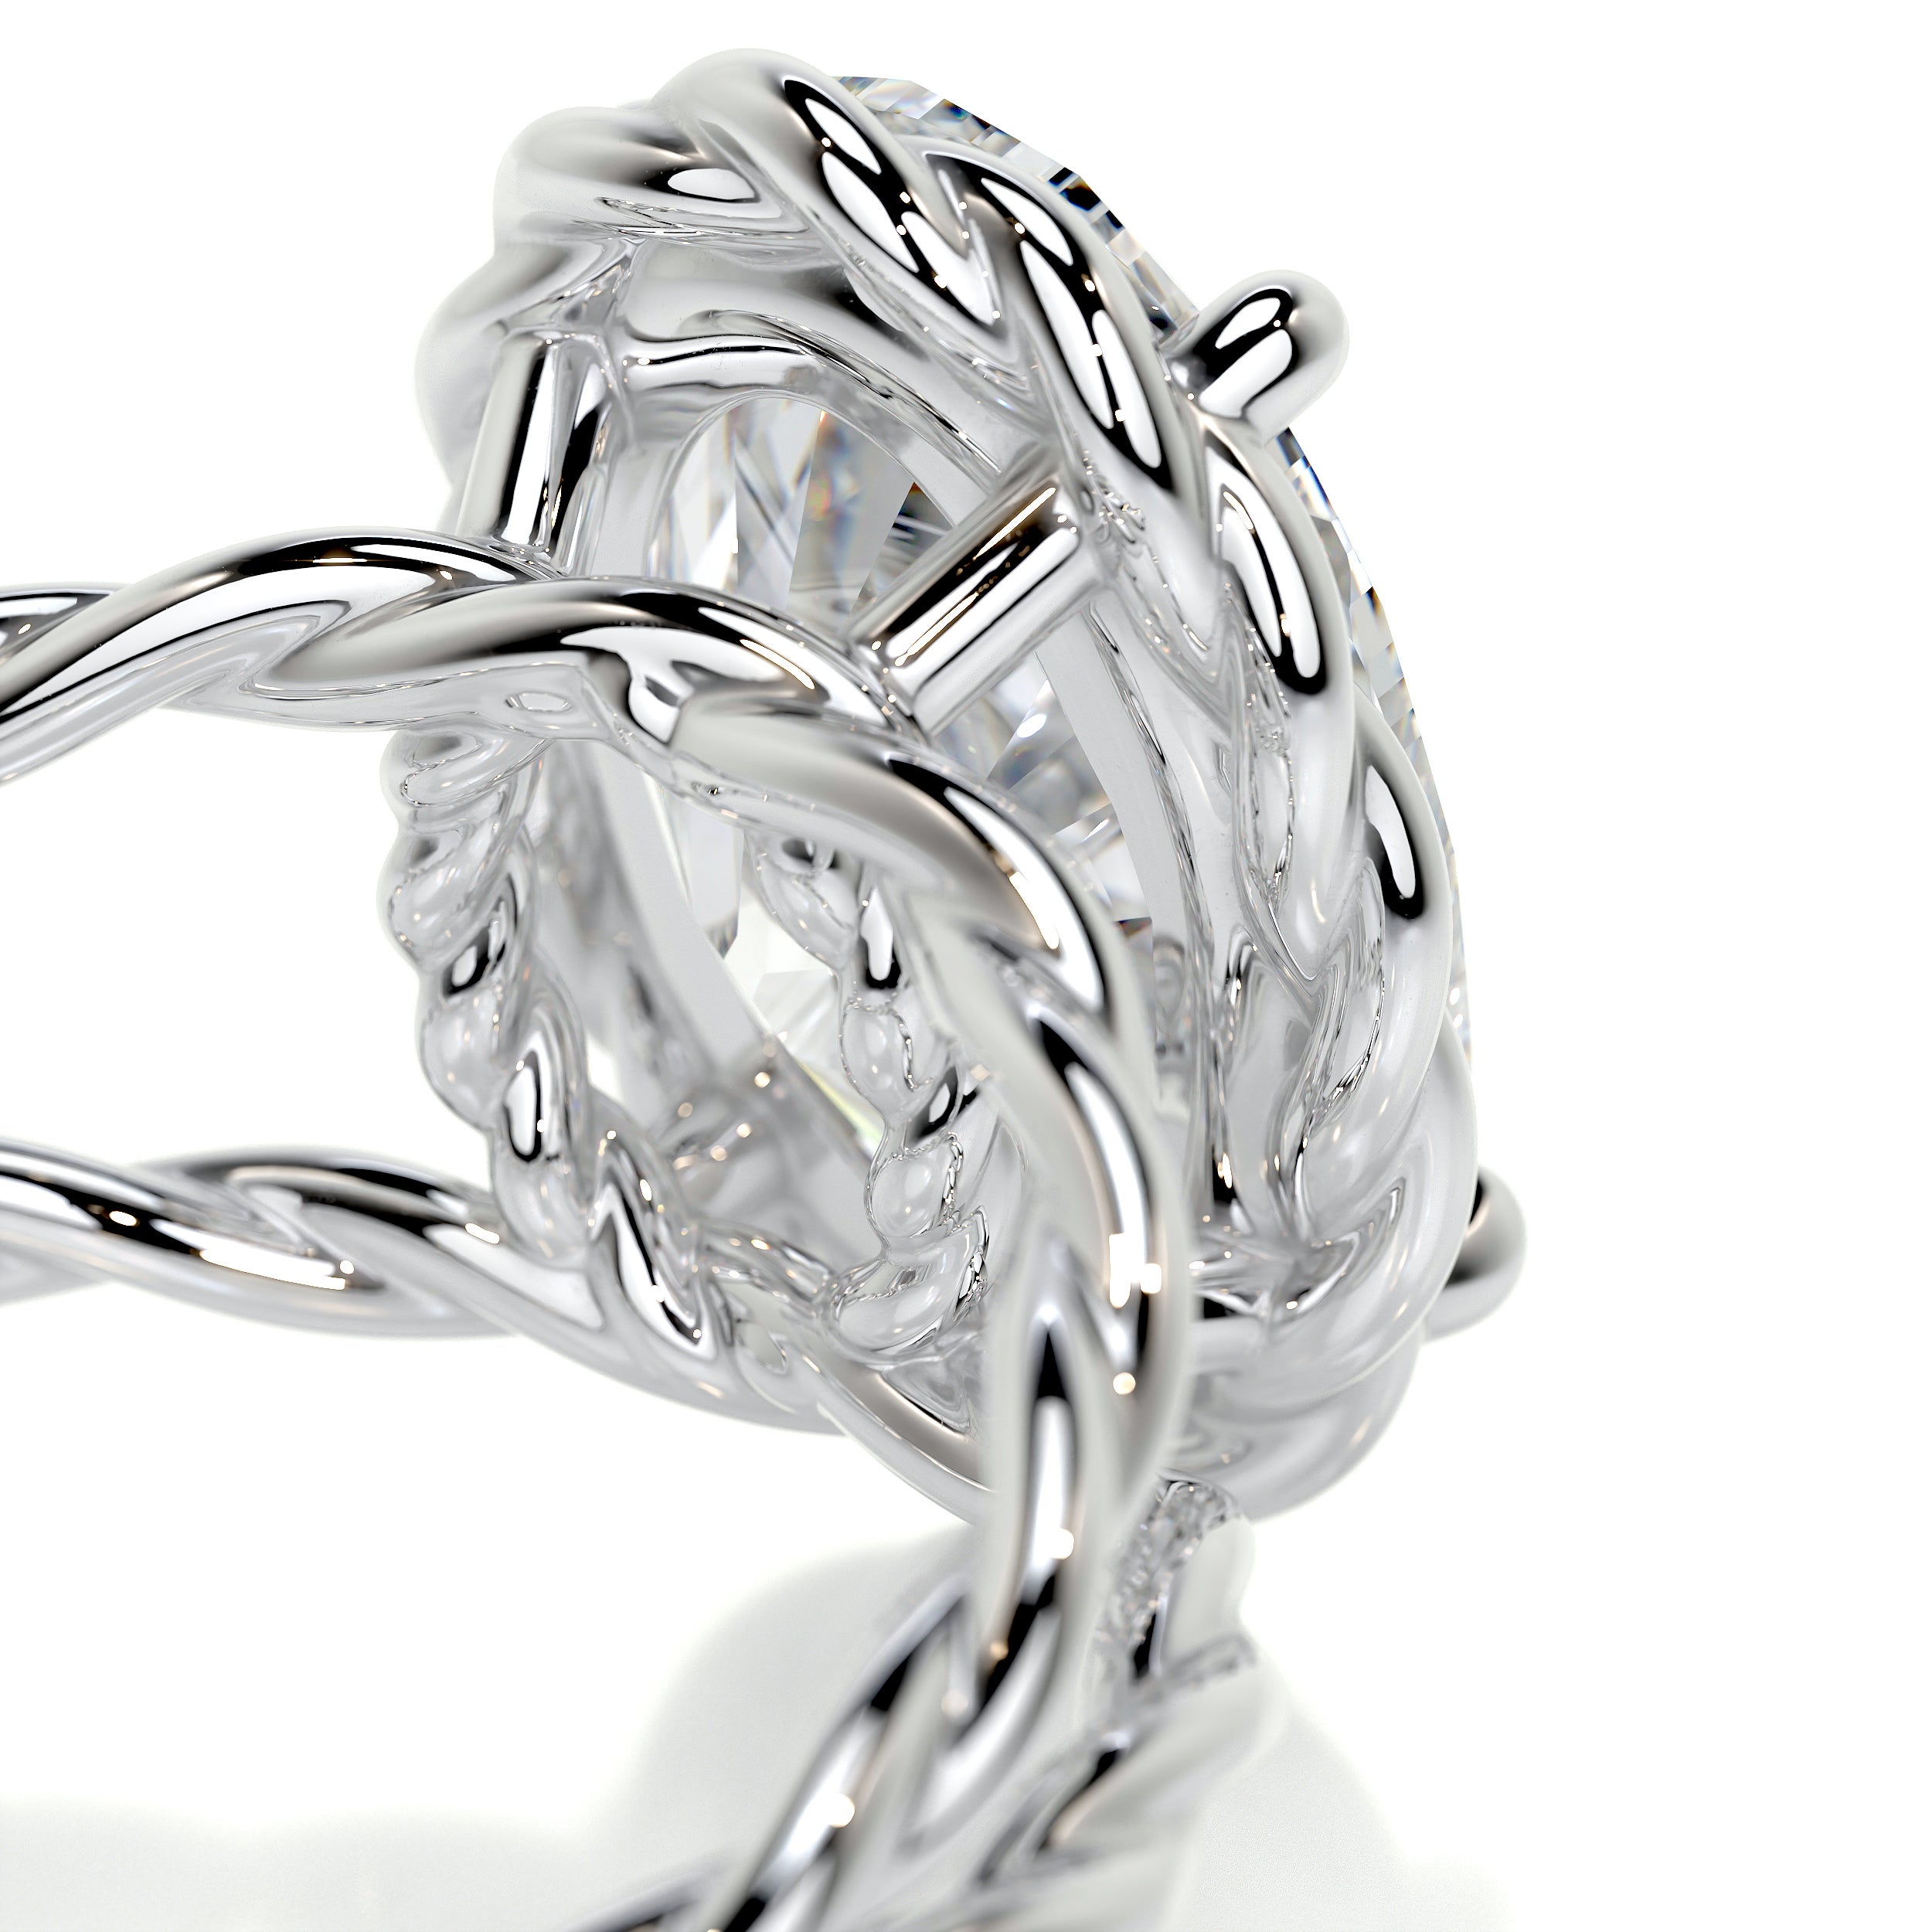 Milani Diamond Engagement Ring   (3 Carat) -18K White Gold